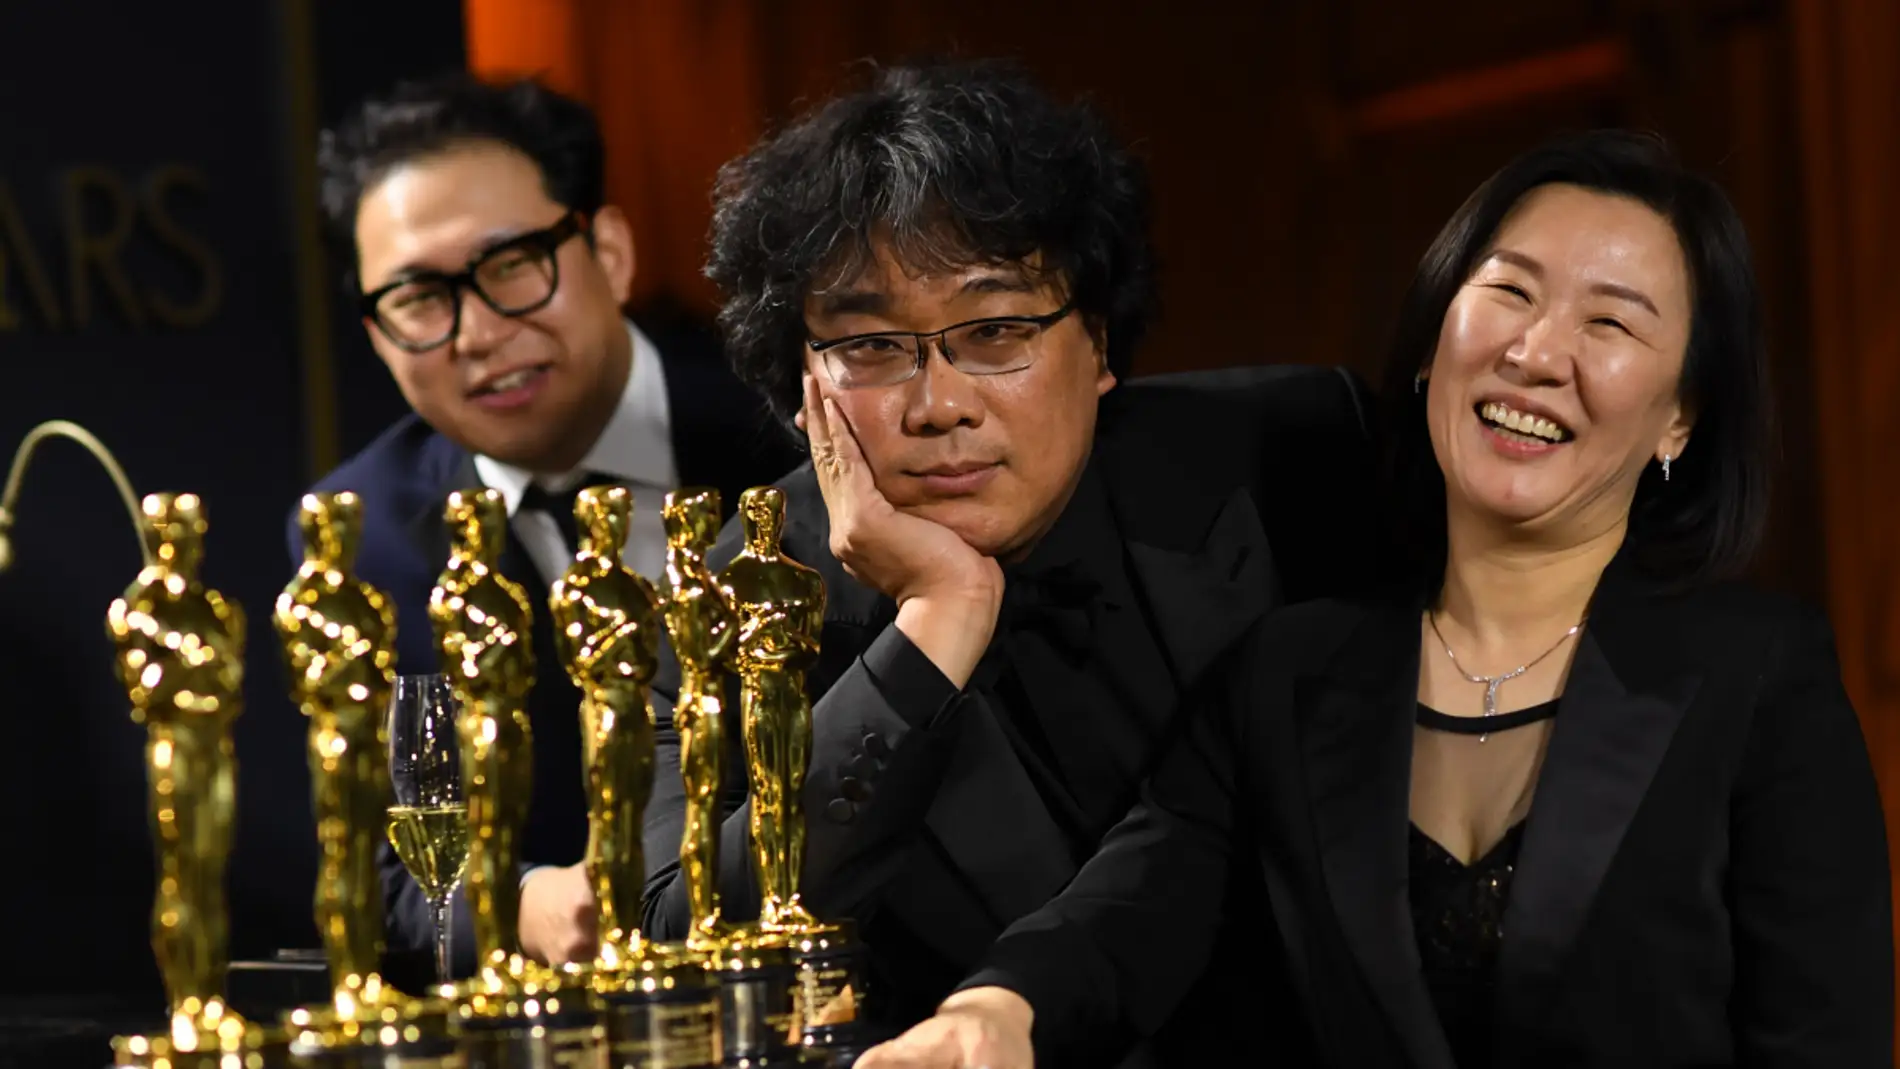 El director surcoreano Bong Joon-ho posa, junto a su productora Kwak Sin-ae, antes los fotógrafos en la noche de los Oscar